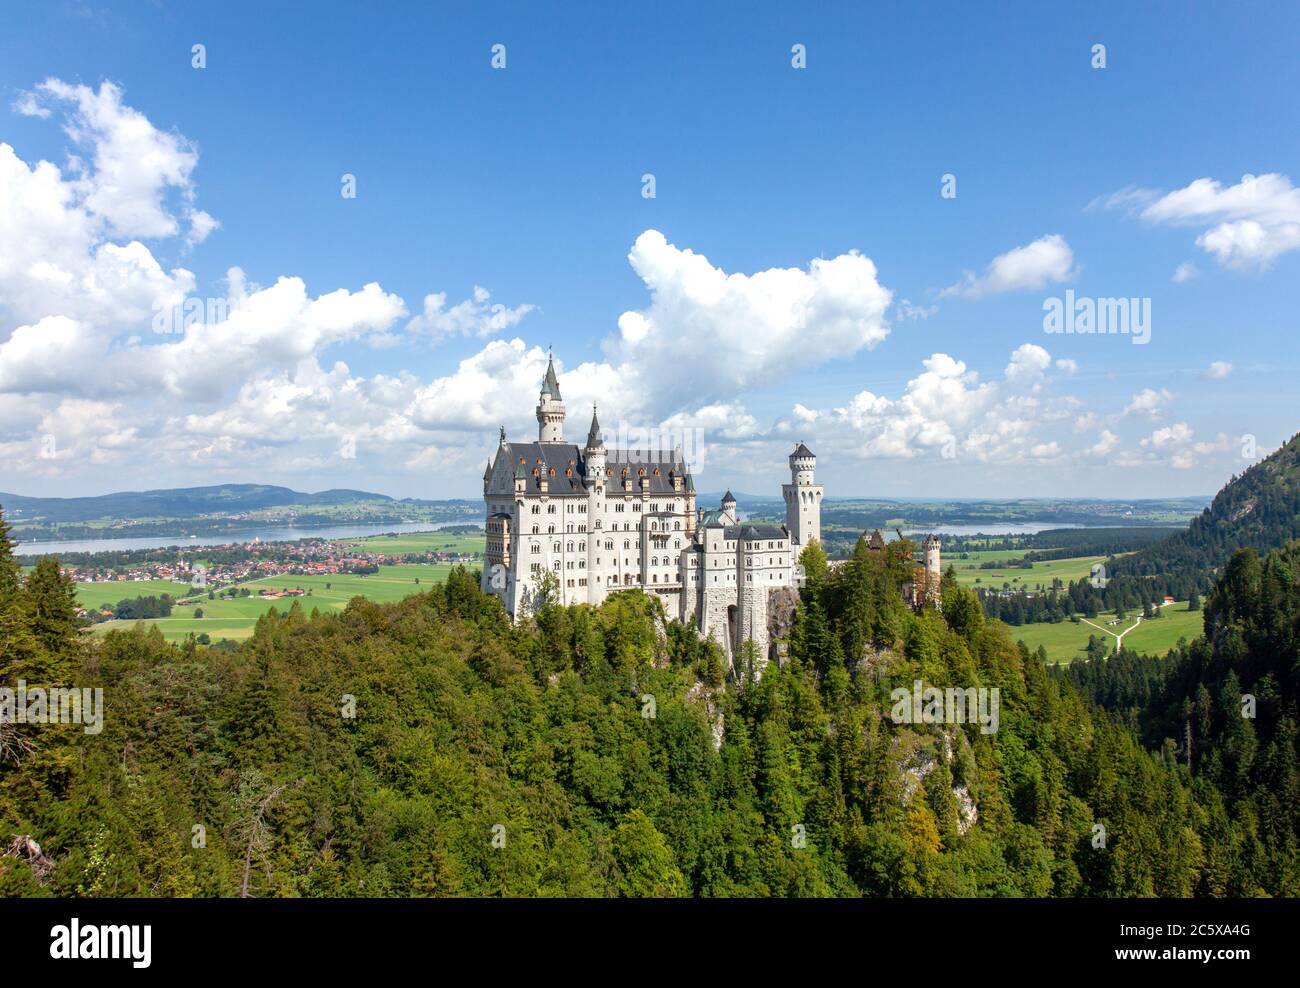 Le château de Neuschwanstein est un palais roman du XIXe siècle situé sur une colline escarpée au-dessus du village de Hohenschwangau, près de Füssen, dans le sud-ouest de Bavari Banque D'Images